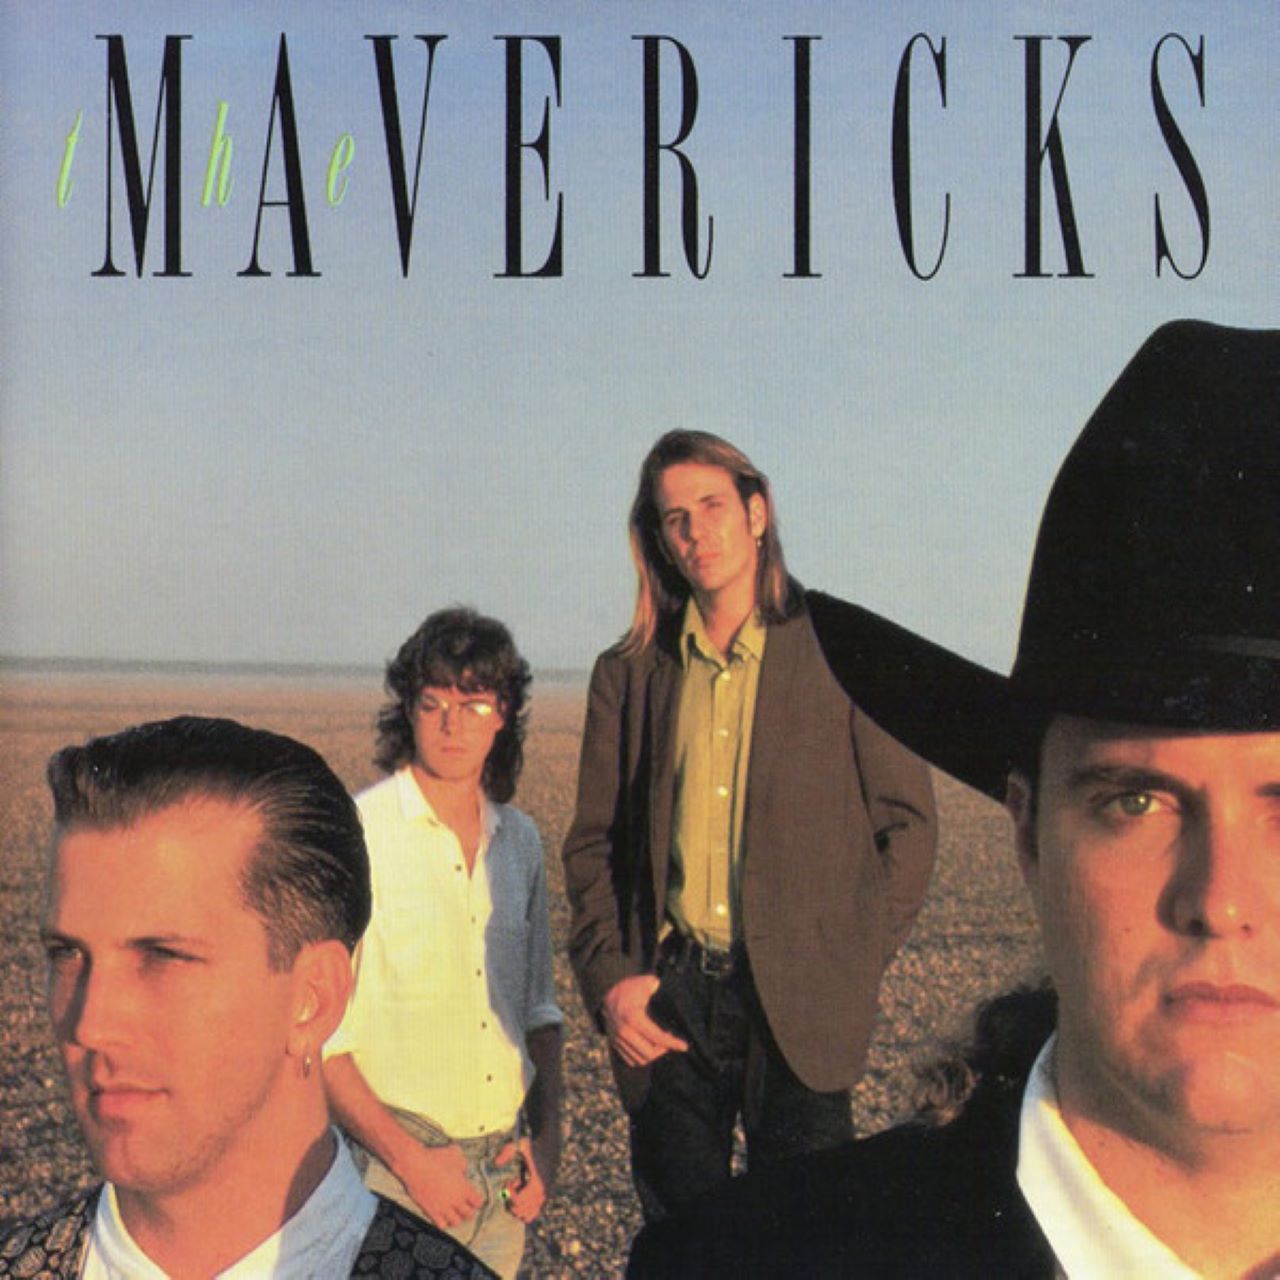 Mavericks - The Maverickcs cover album